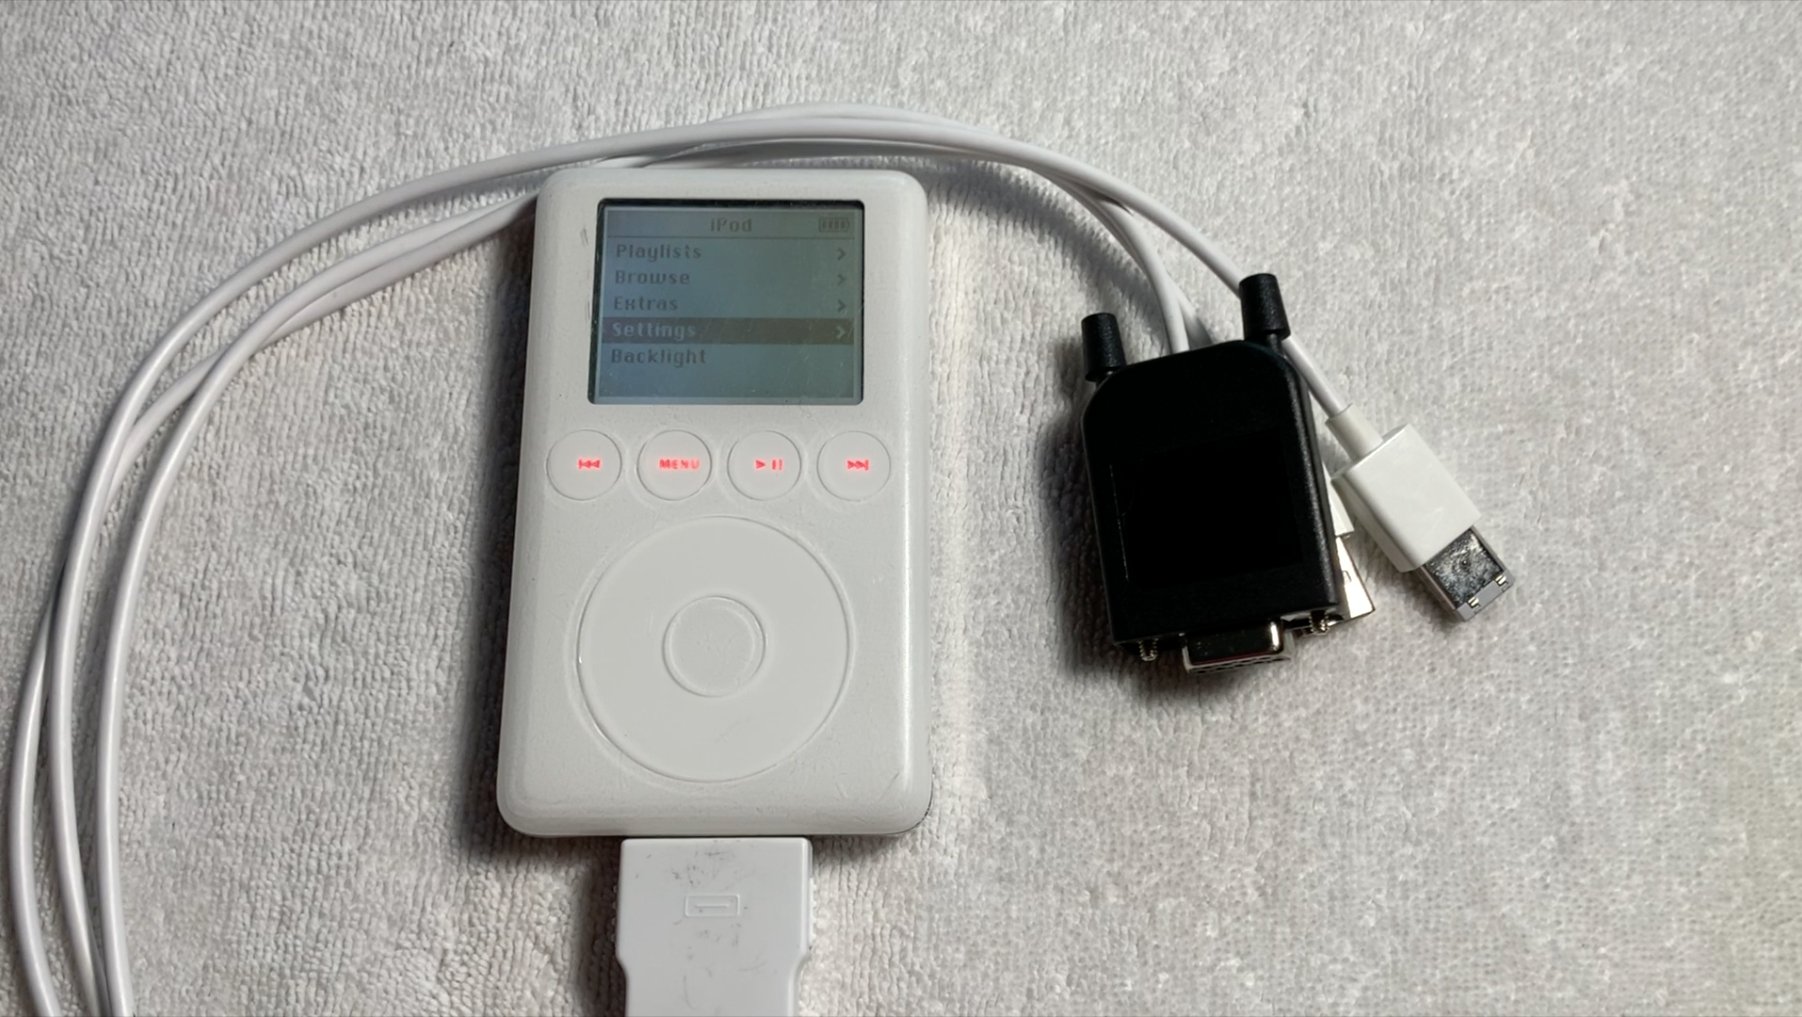 Es wurde ein Apple iPod-Prototyp mit einem Tetris-Klon-Spiel gefunden. Er wurde nie veröffentlicht